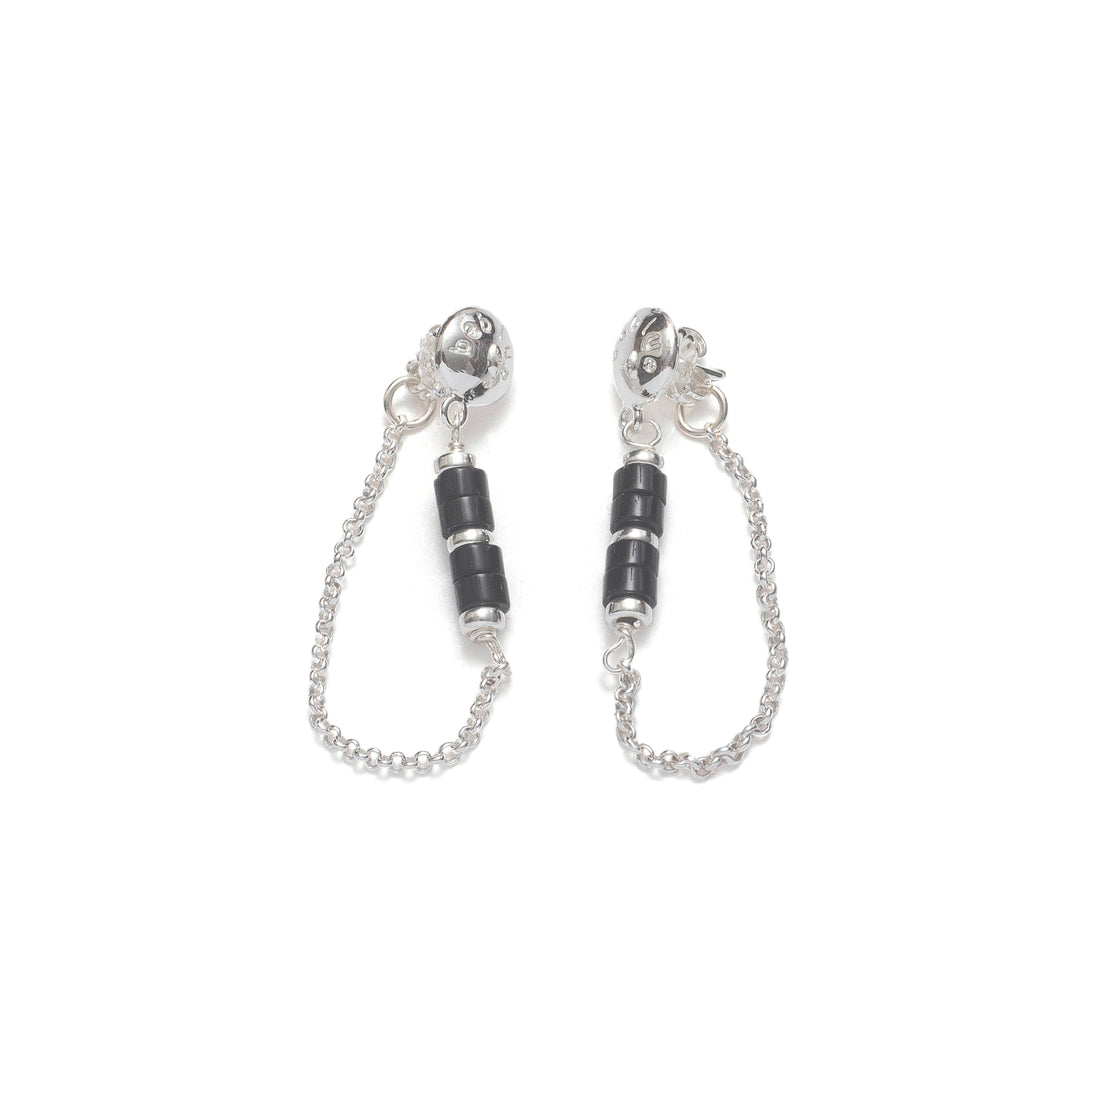 BO 1588 Earrings - Black Velvet